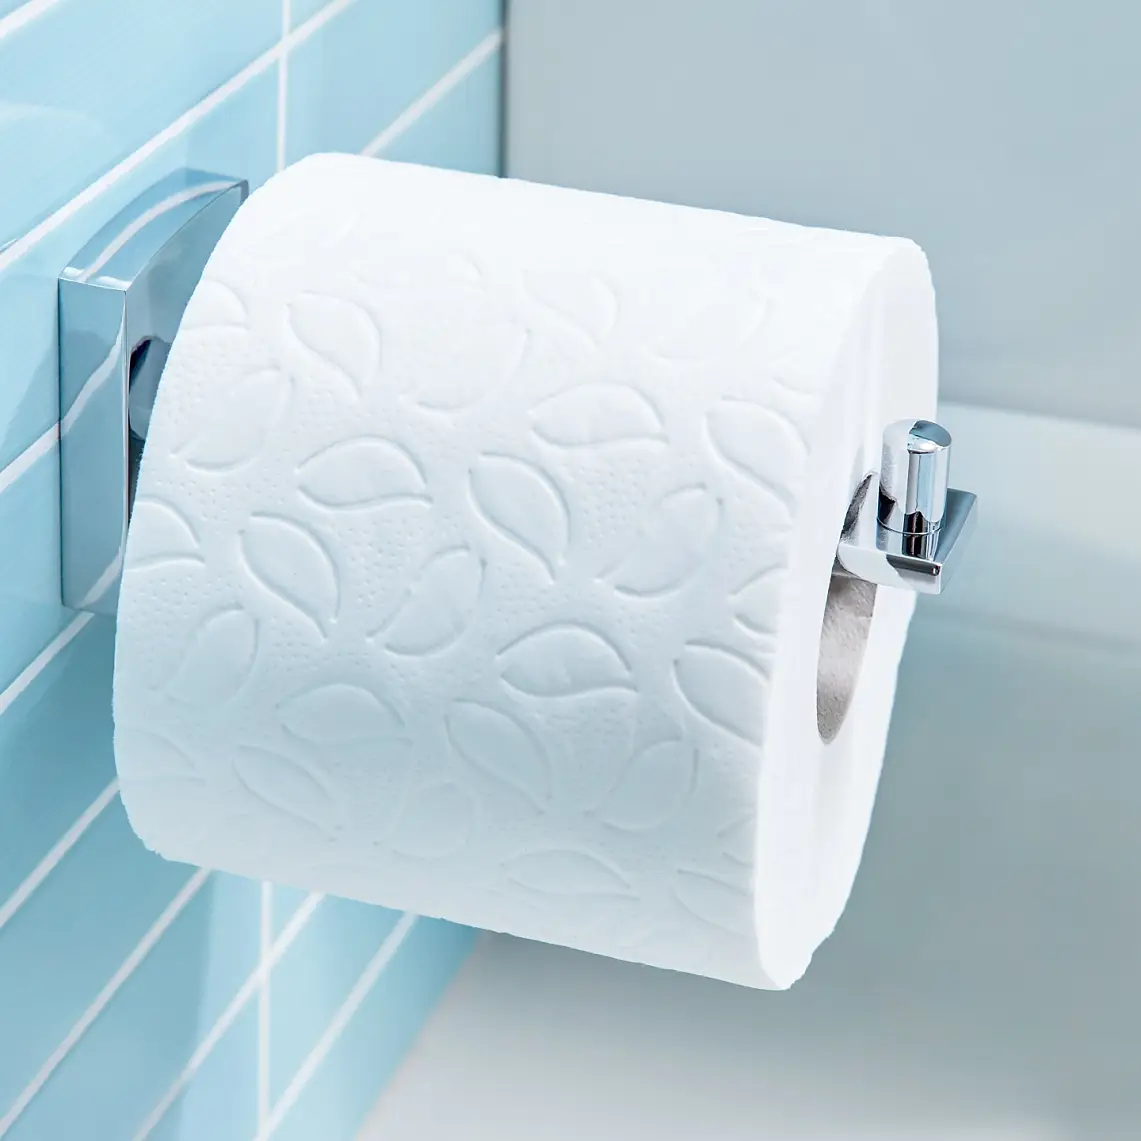 Diseños simples para tener los rollos de papel higiénico donde más los necesites.